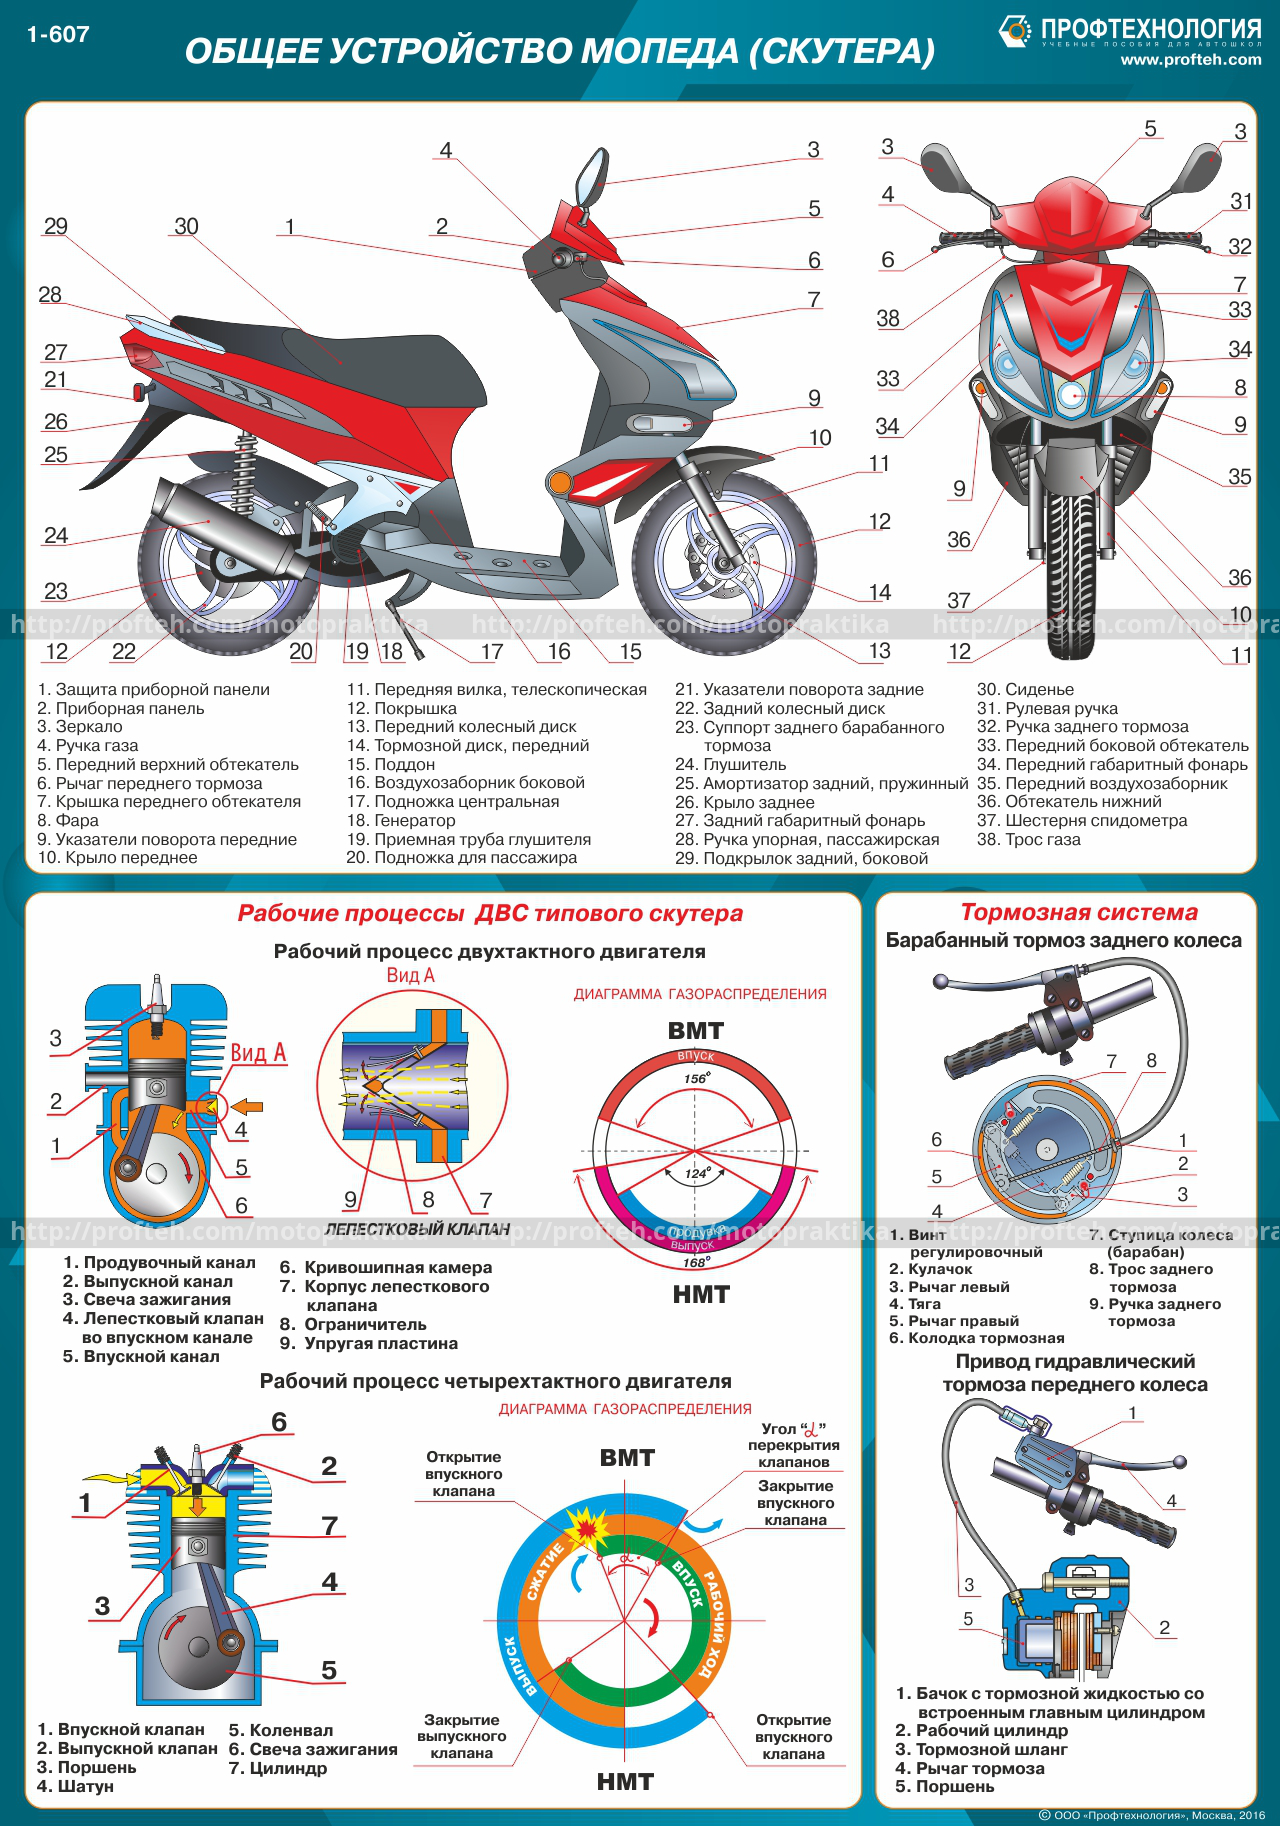 Категория для управления мотоциклом